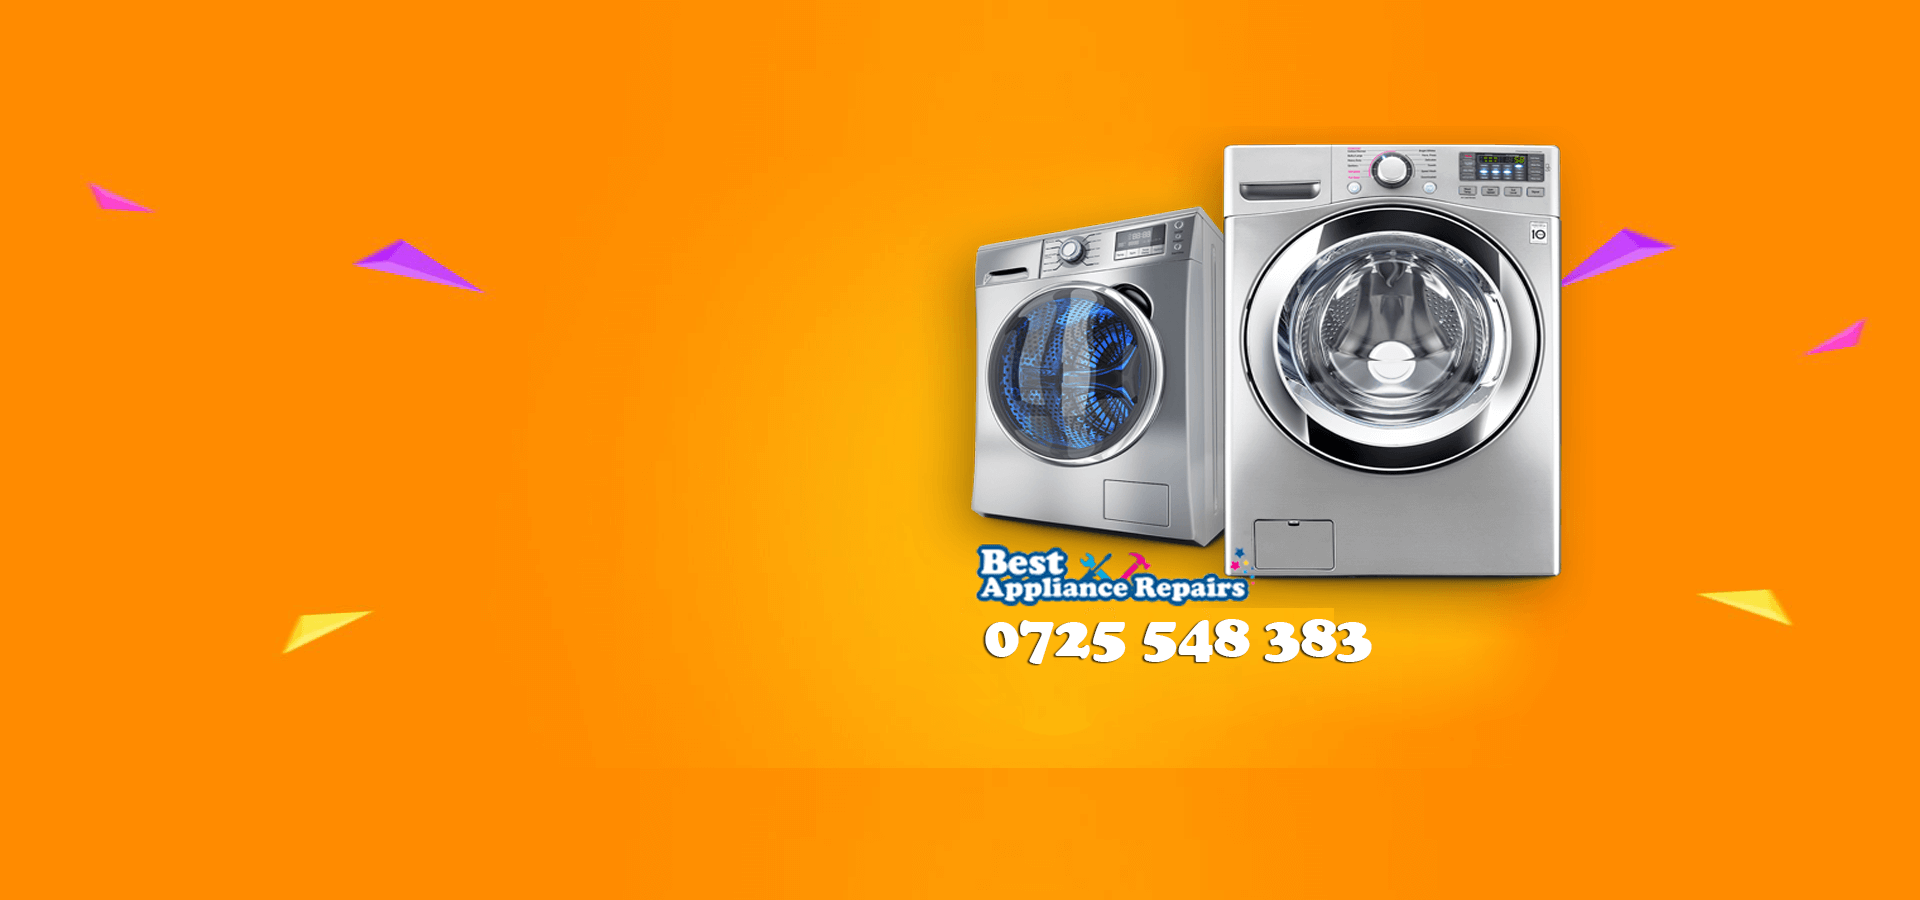 best washing machine repair near me in nairobi kenya